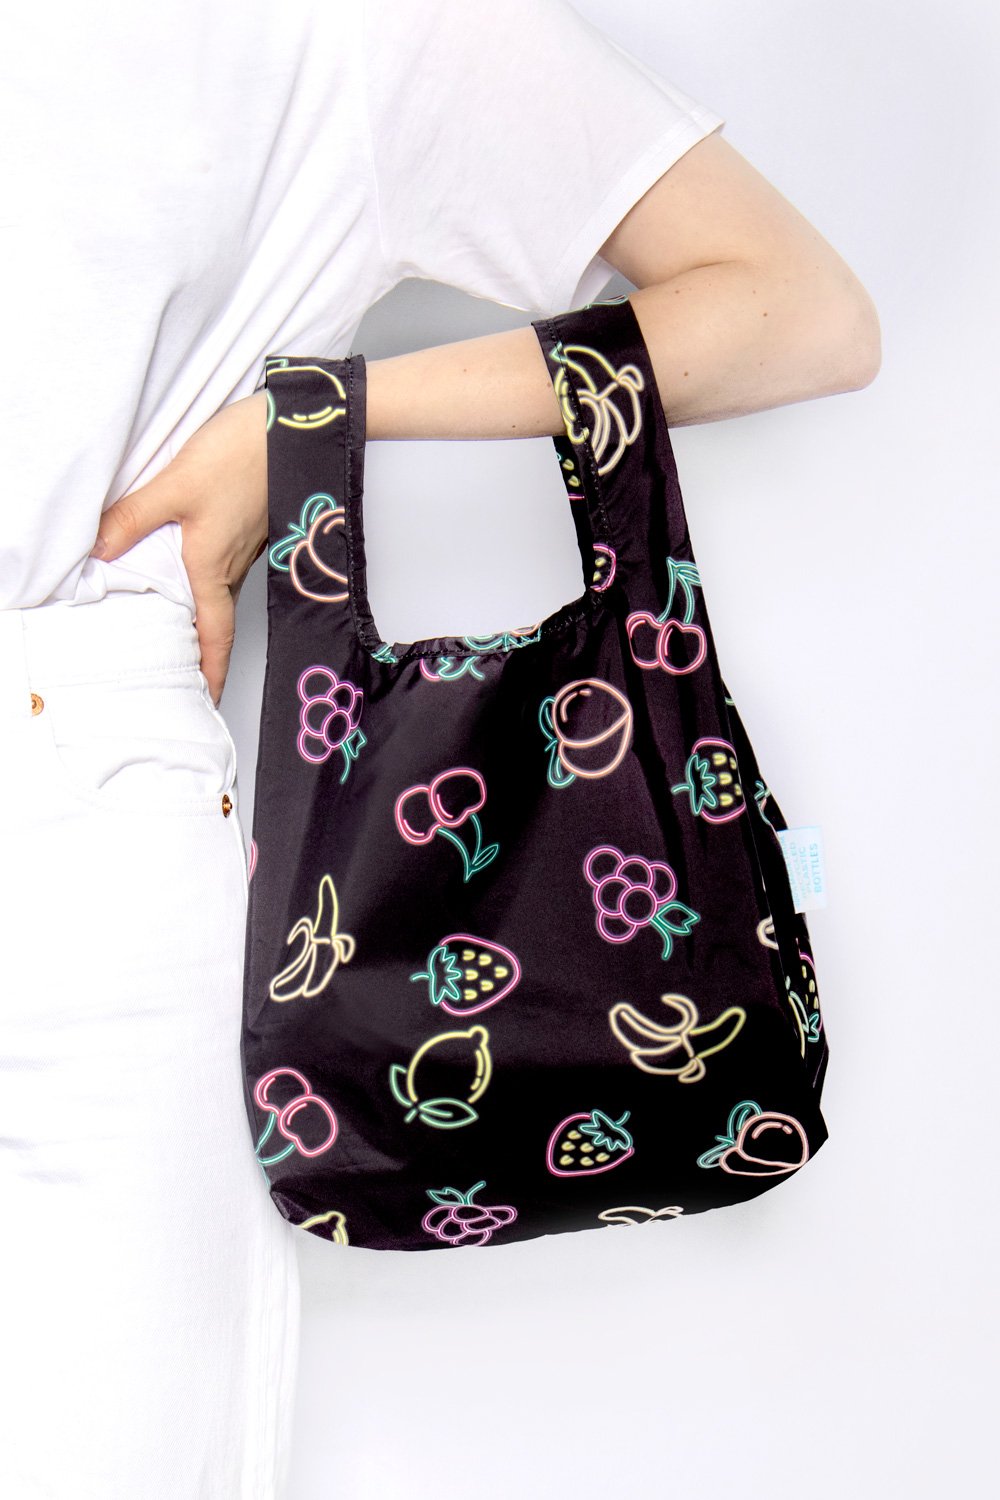 Small Reusable Fun Shopping Bag with neon fruits design